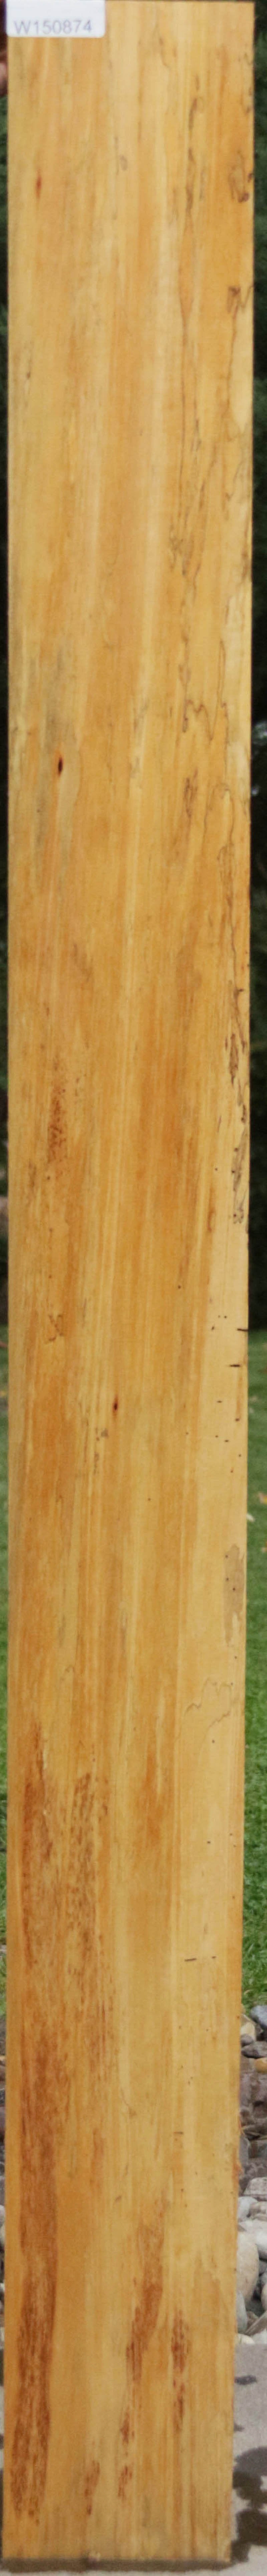 Spalted Jobillo Lumber